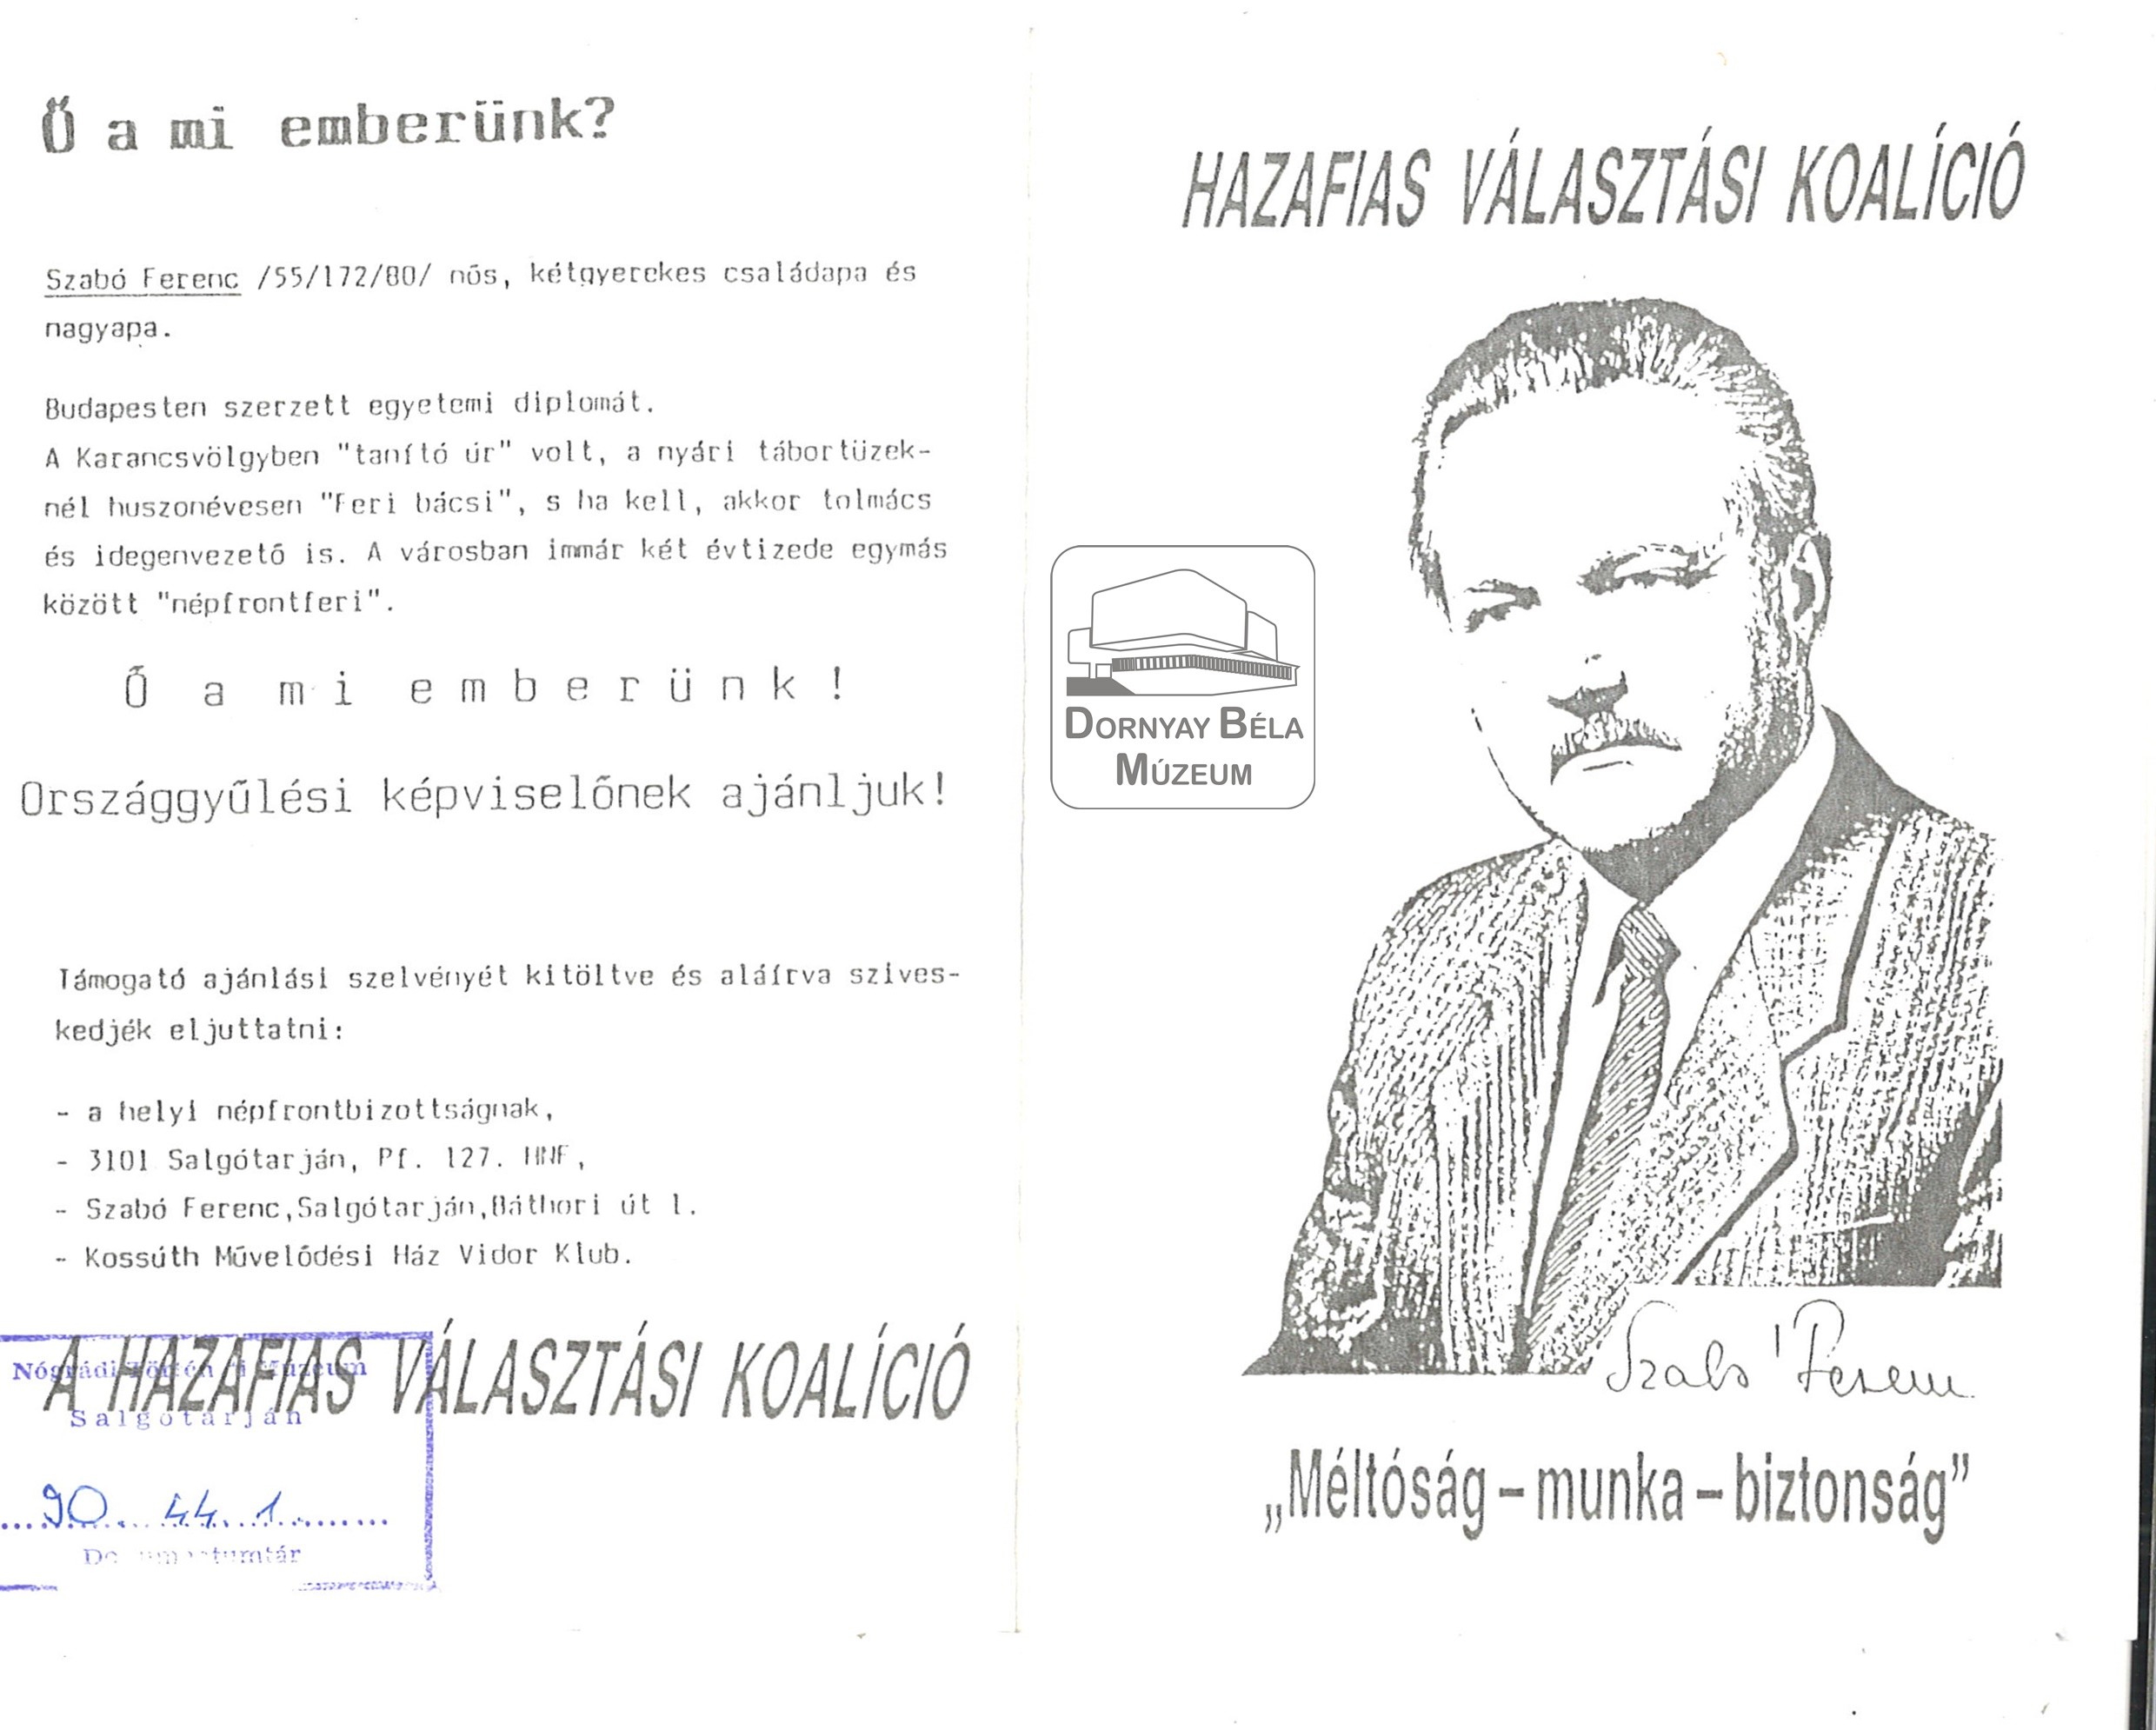 Szabó Ferenc Hazafias Népfront koalíció képvis.jelöltje. (Dornyay Béla Múzeum, Salgótarján CC BY-NC-SA)